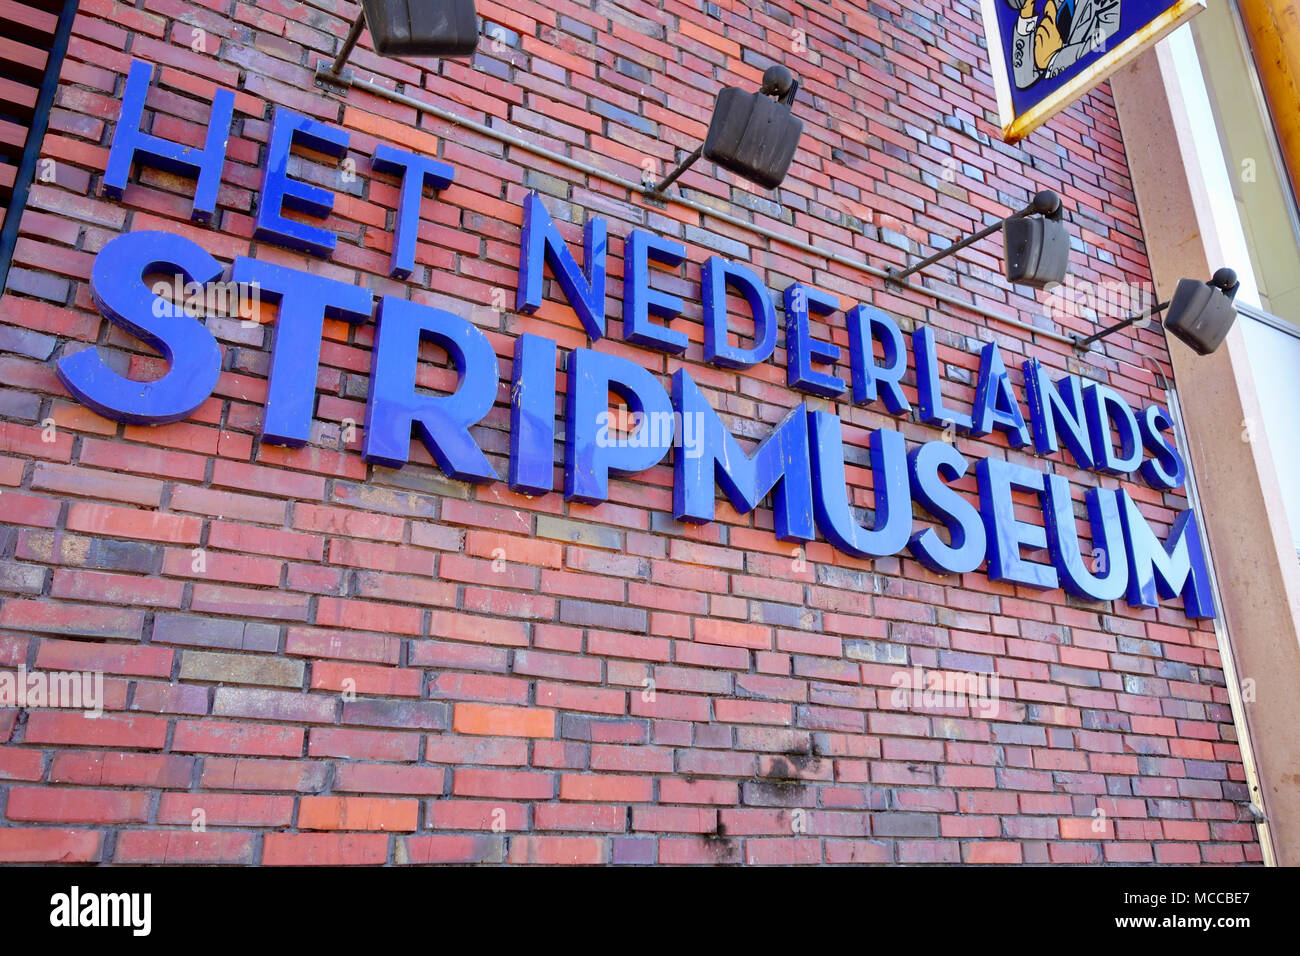 Het Nederlands Stripmuseum, (le dessin animé/BD) Musée de Groningue, Pays-Bas Banque D'Images